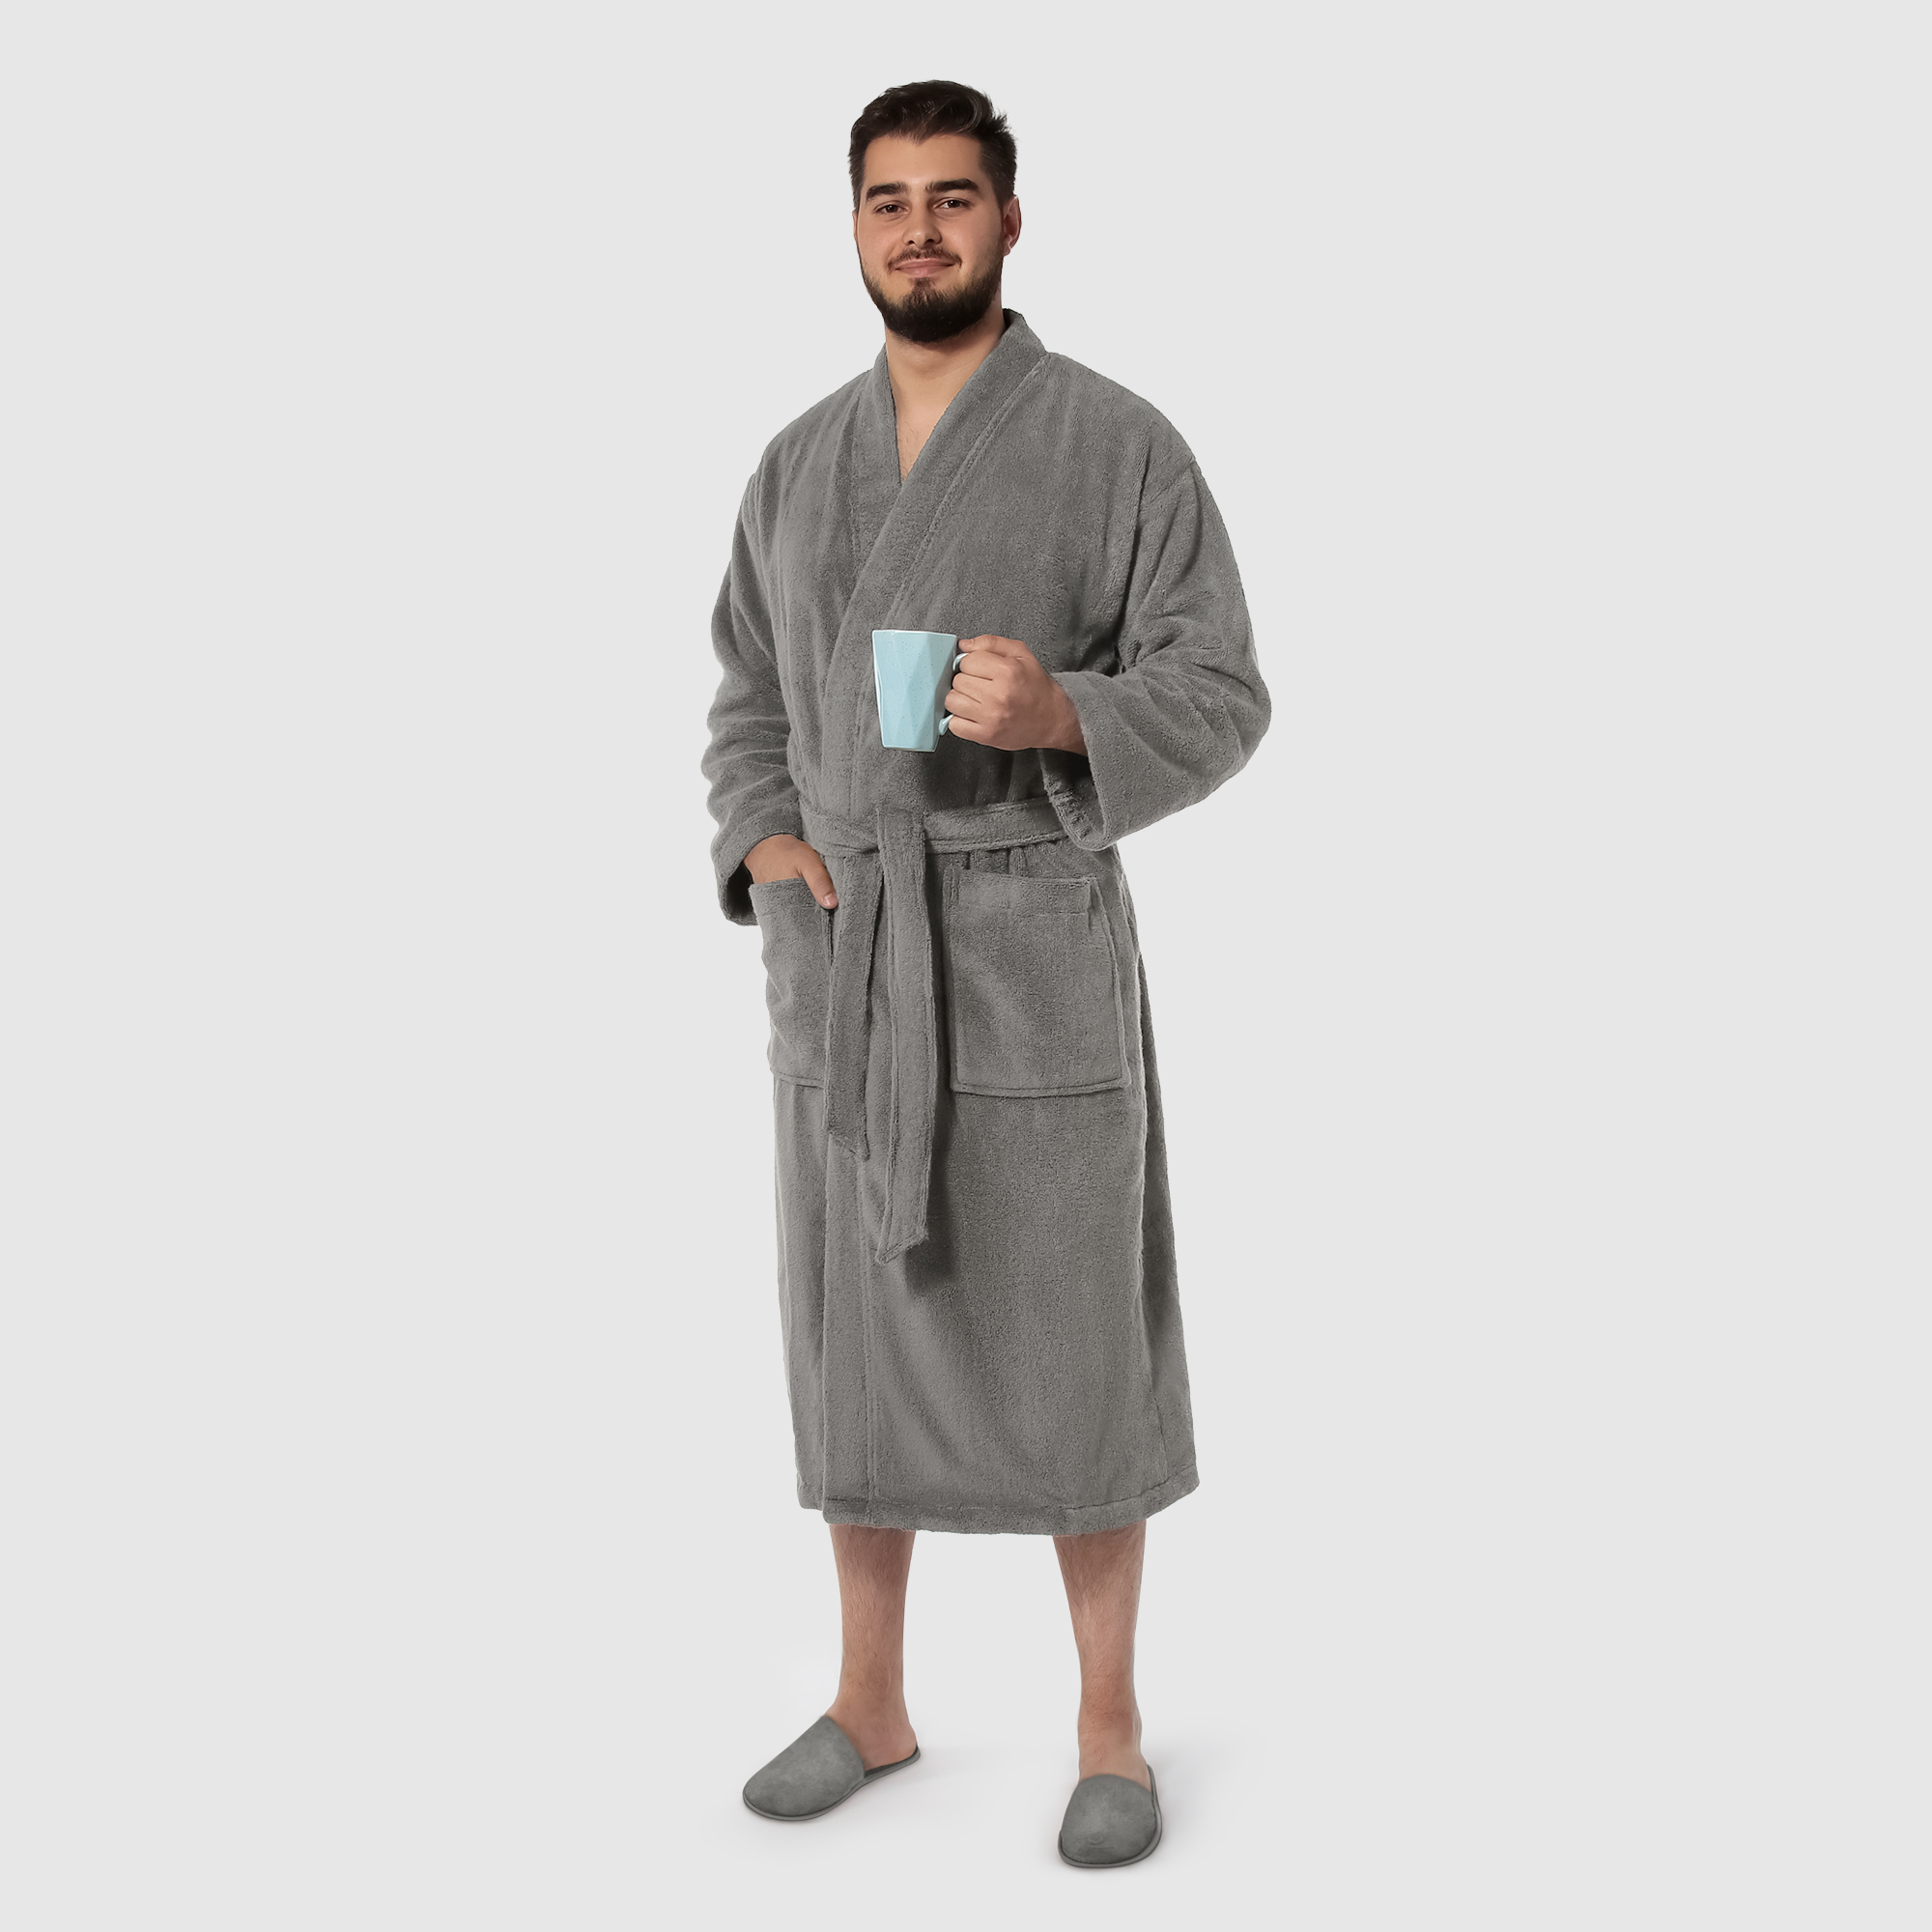 Мужской халат Maisonette Parla светло-серый S халат мужской asil sauna brown xl вафельный с капюшоном